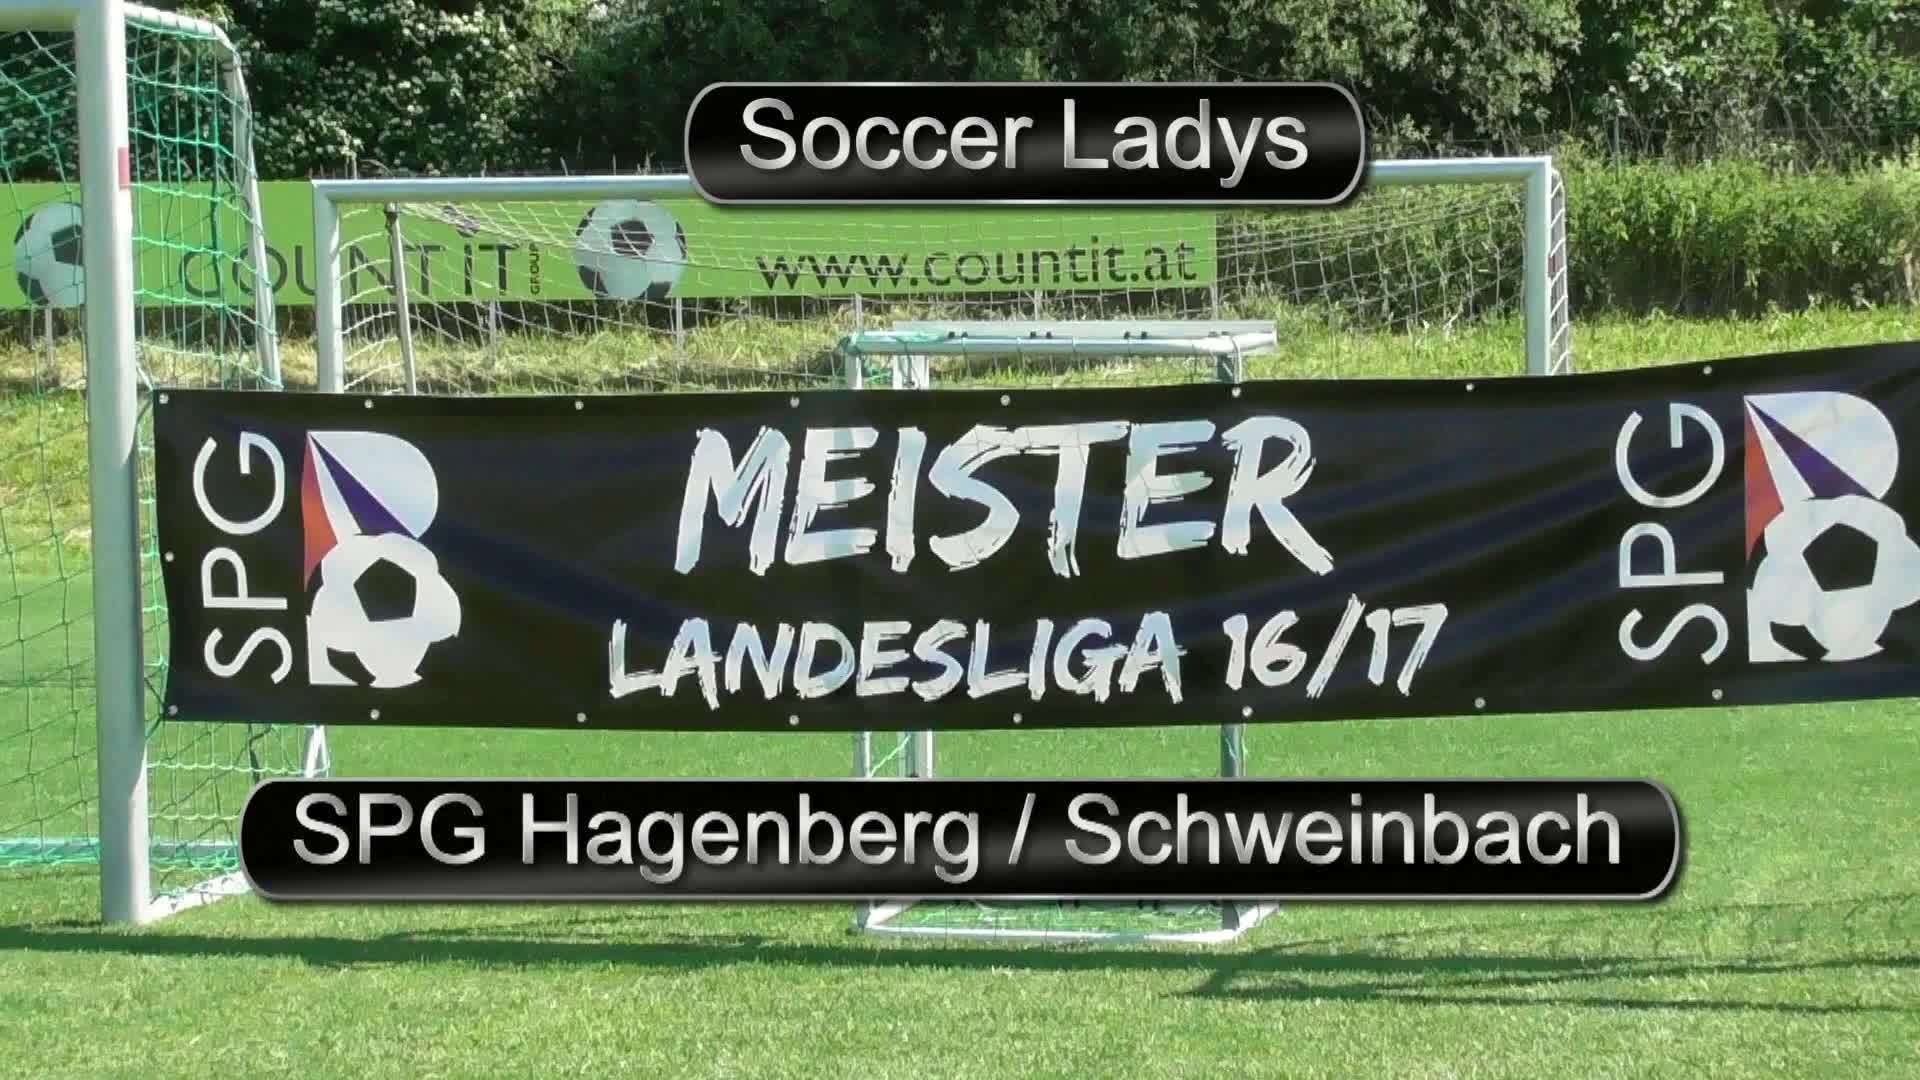 Soccer Ladys sind Landesligameister!